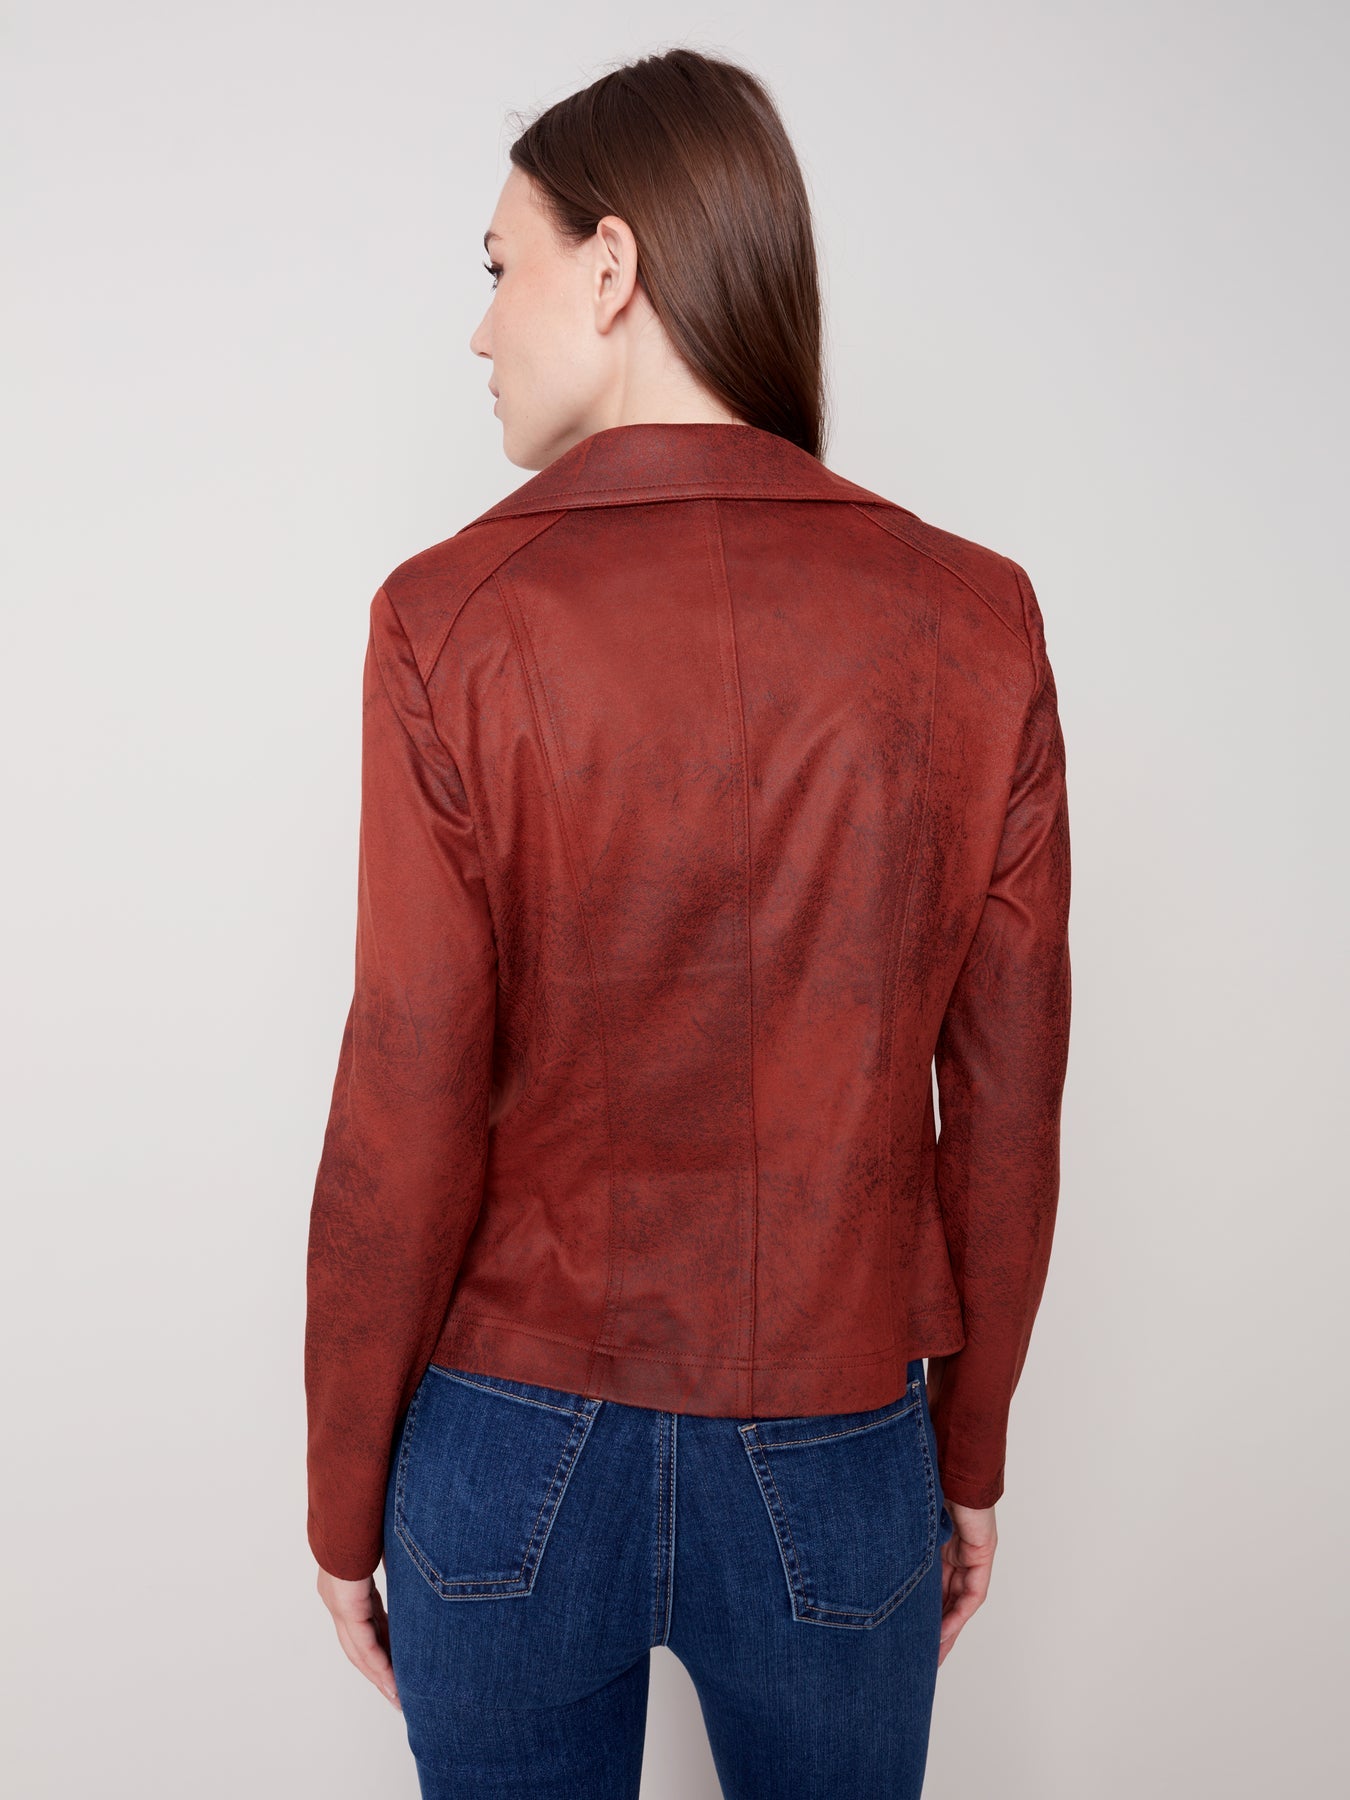 Cinnamon Vintage Leather Jacket